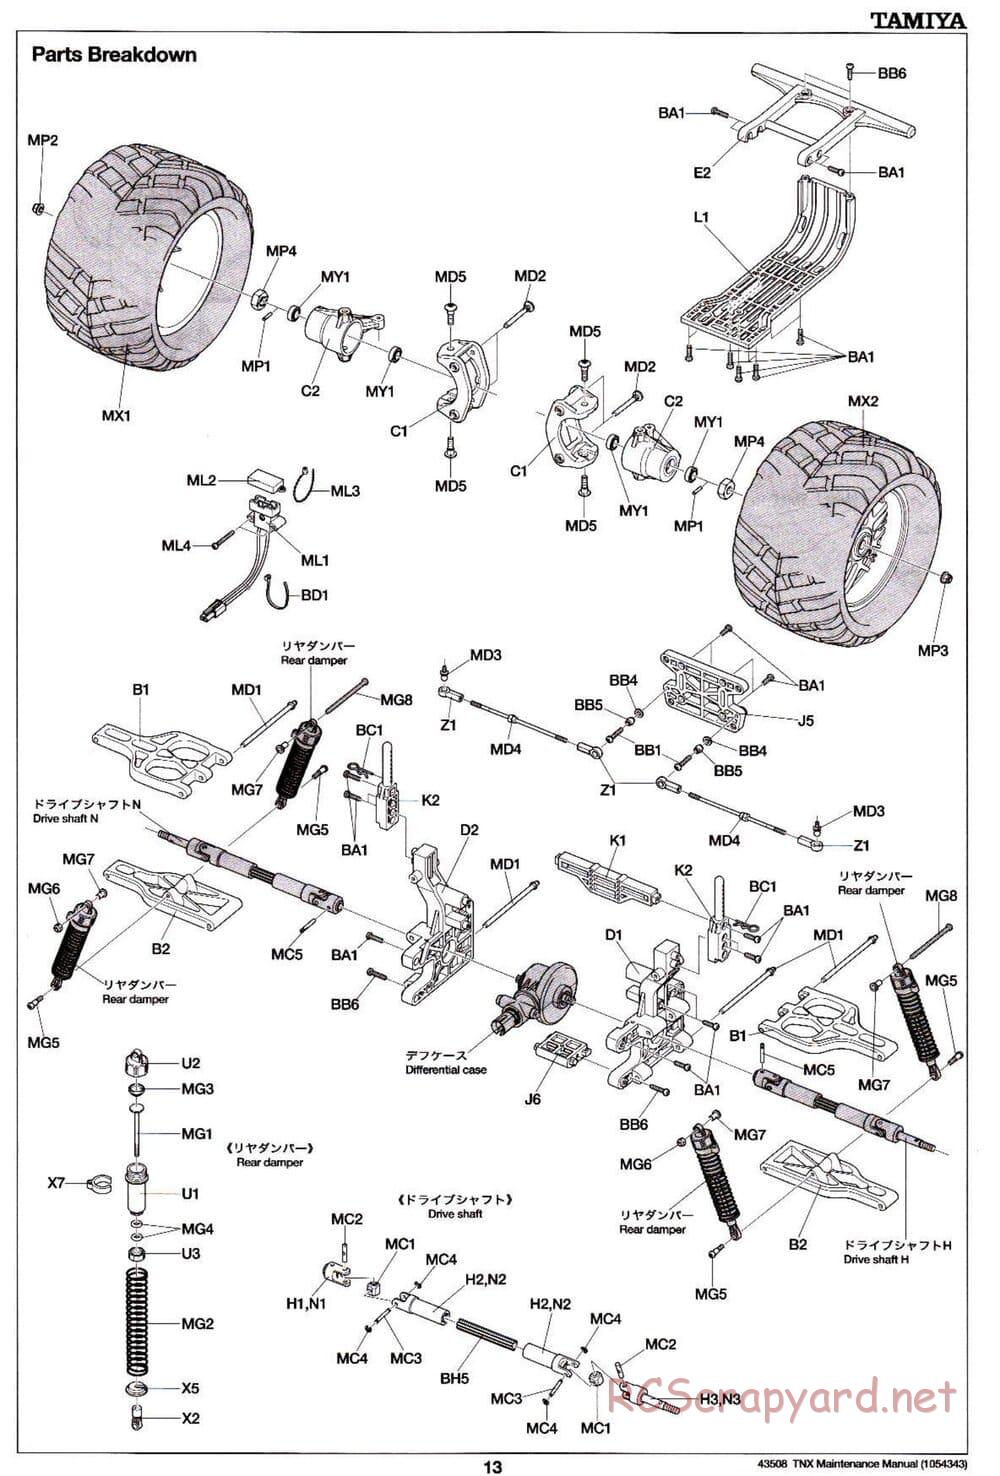 Tamiya - TNX - Maintenance Manual - Page 13